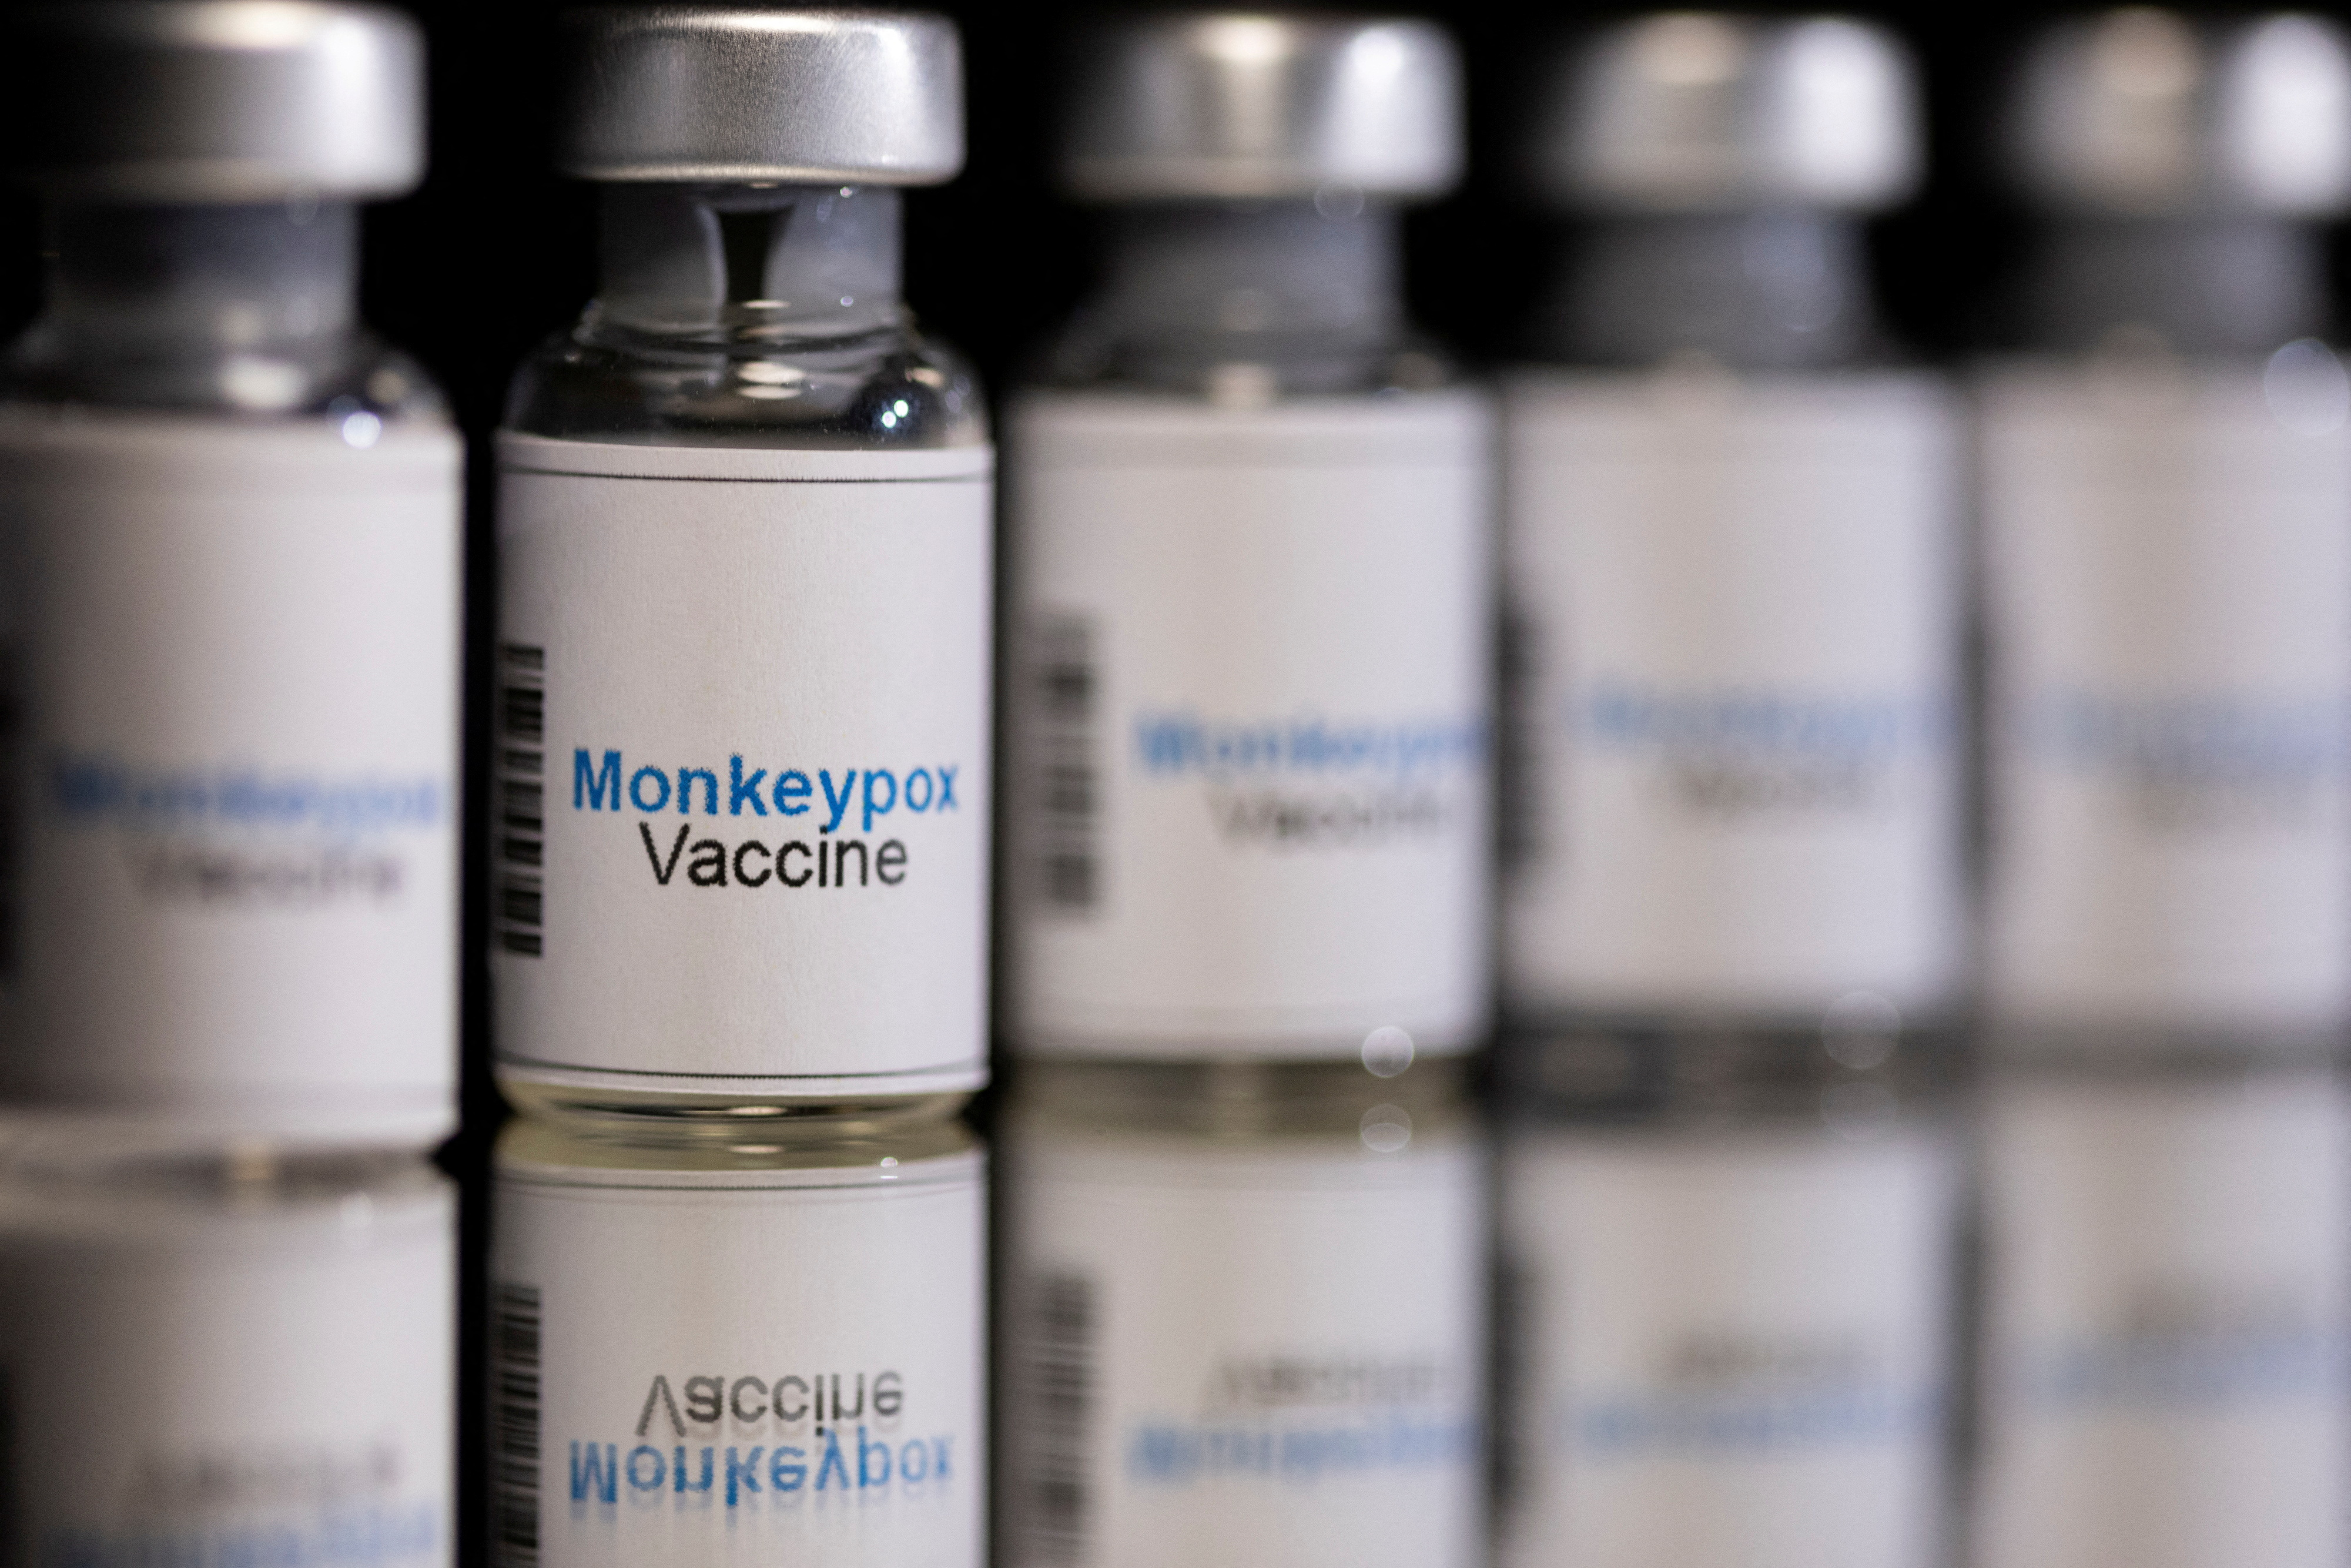 Illustration shows mock-up vials labeled "Monkeypox vaccine"